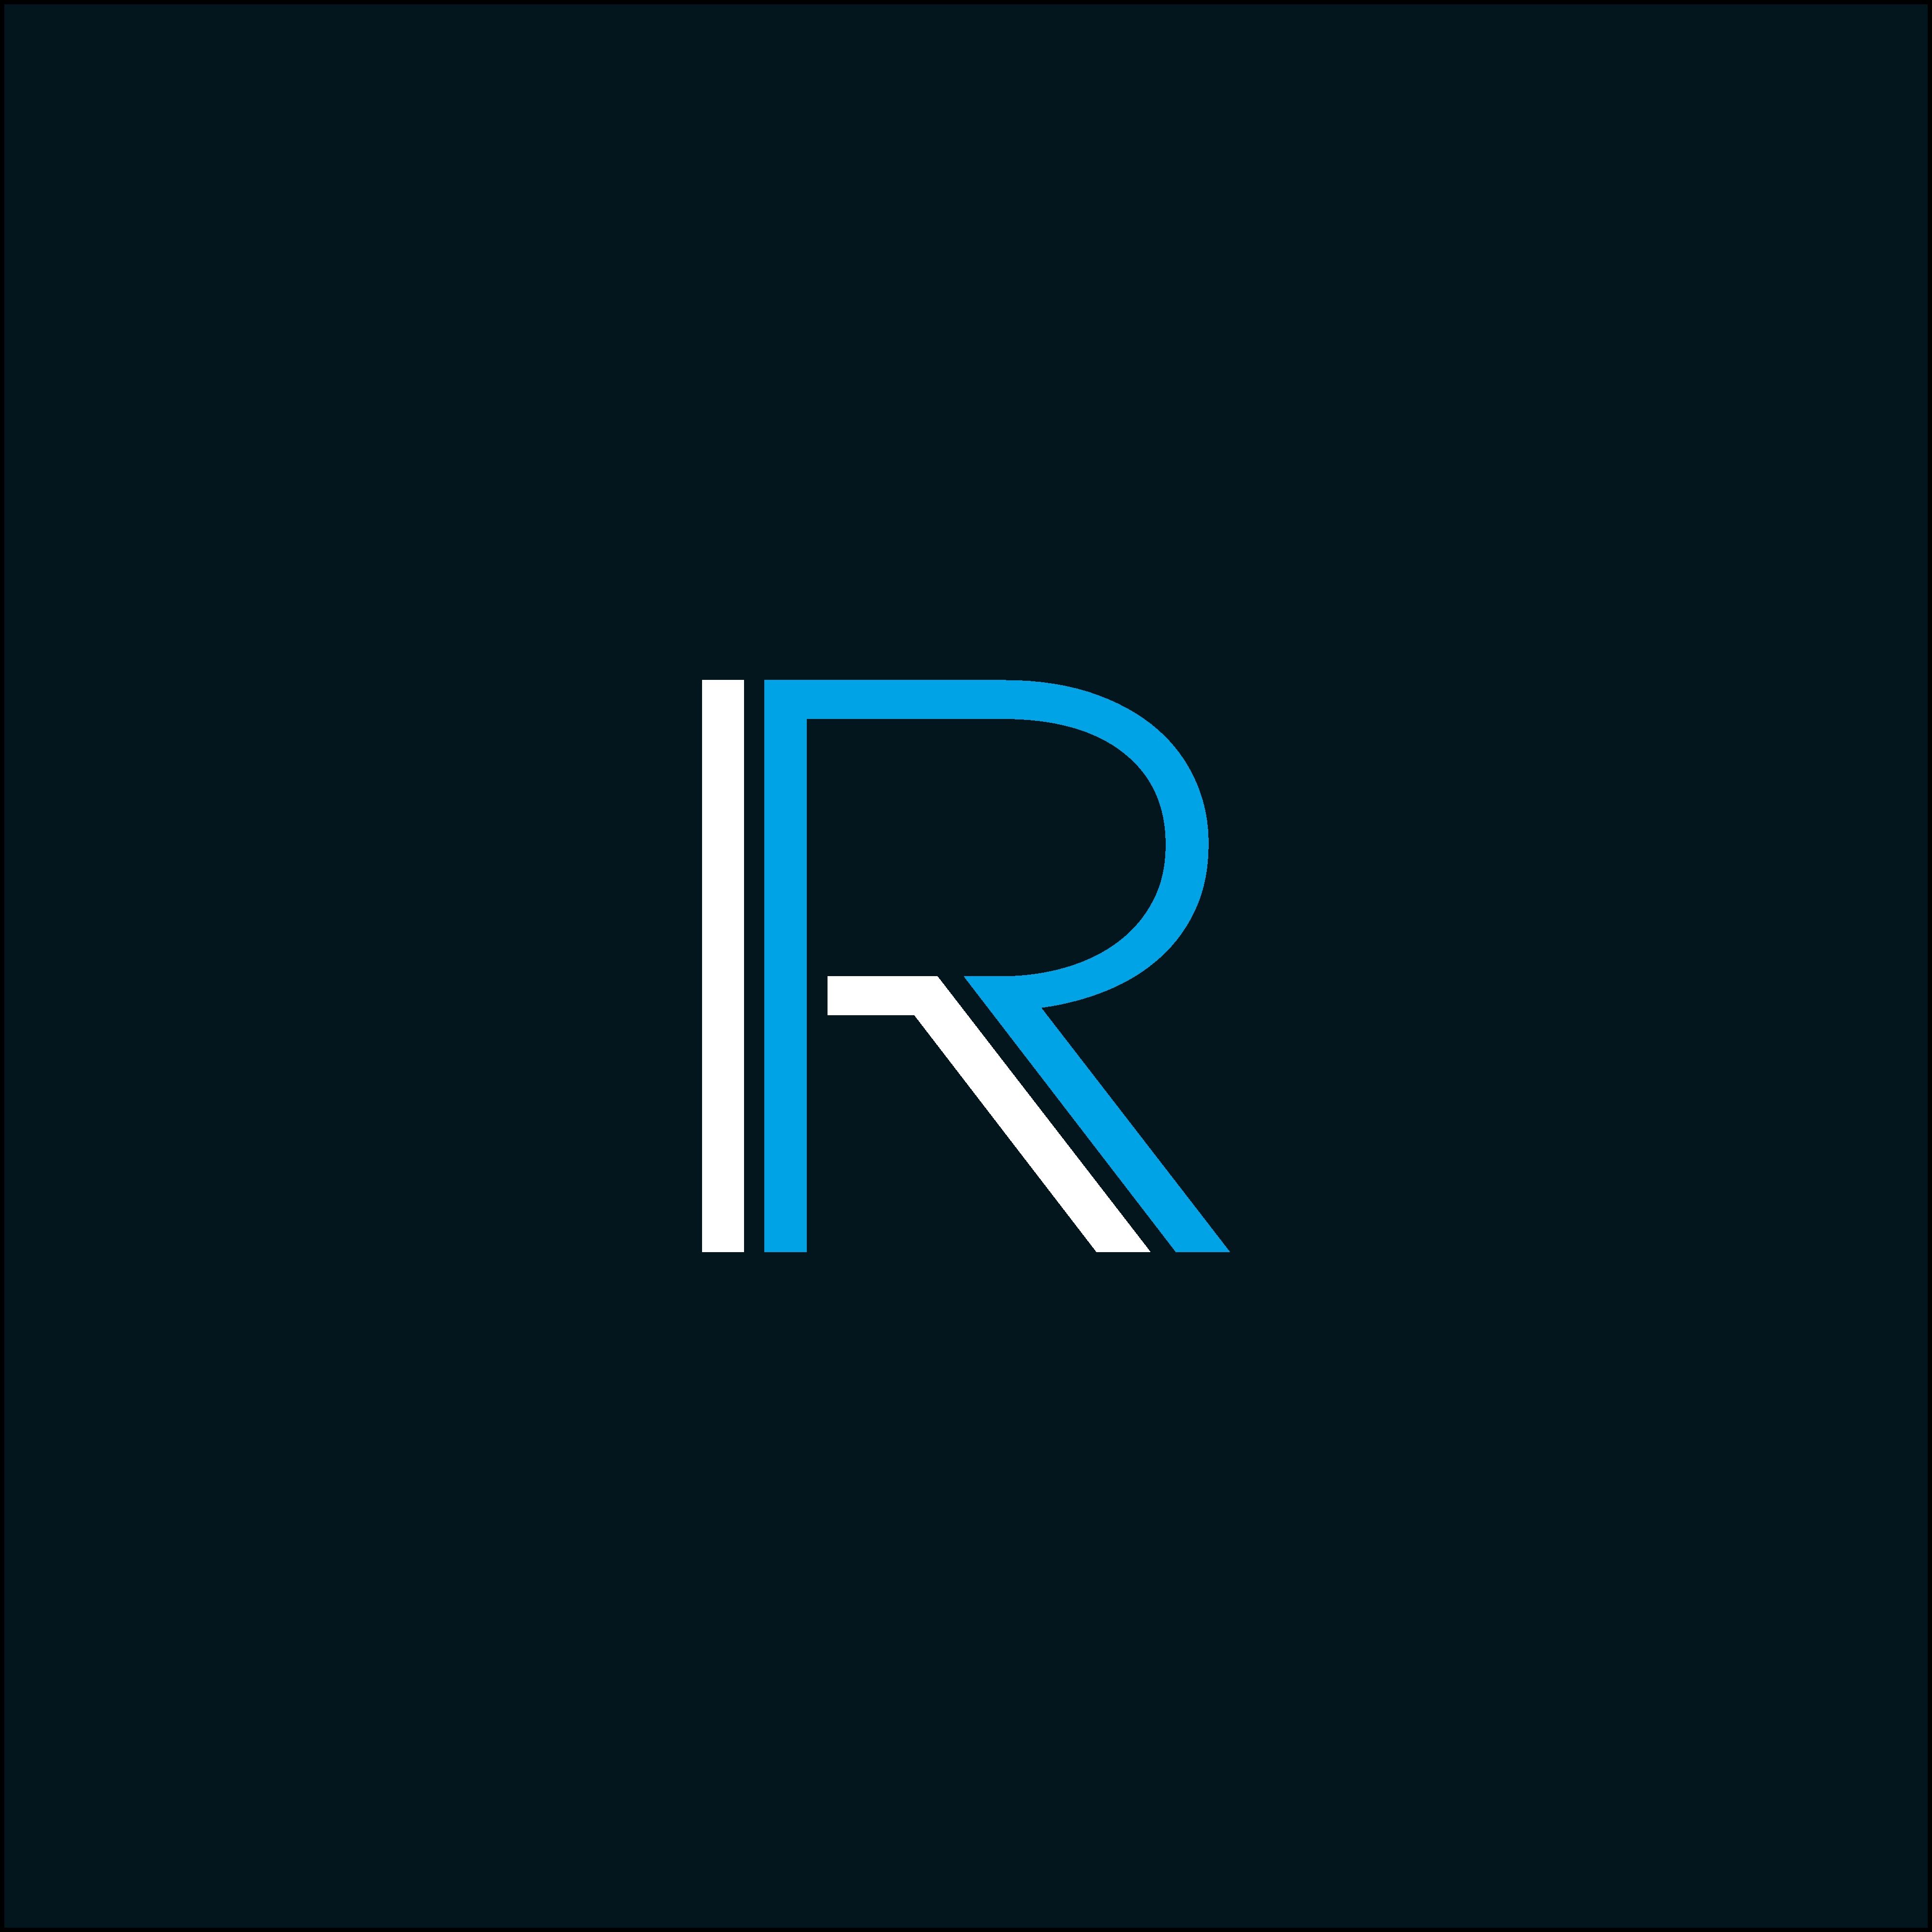 Letter R logo vector. RR logo. Rr logo, Letter logo design, Lettering